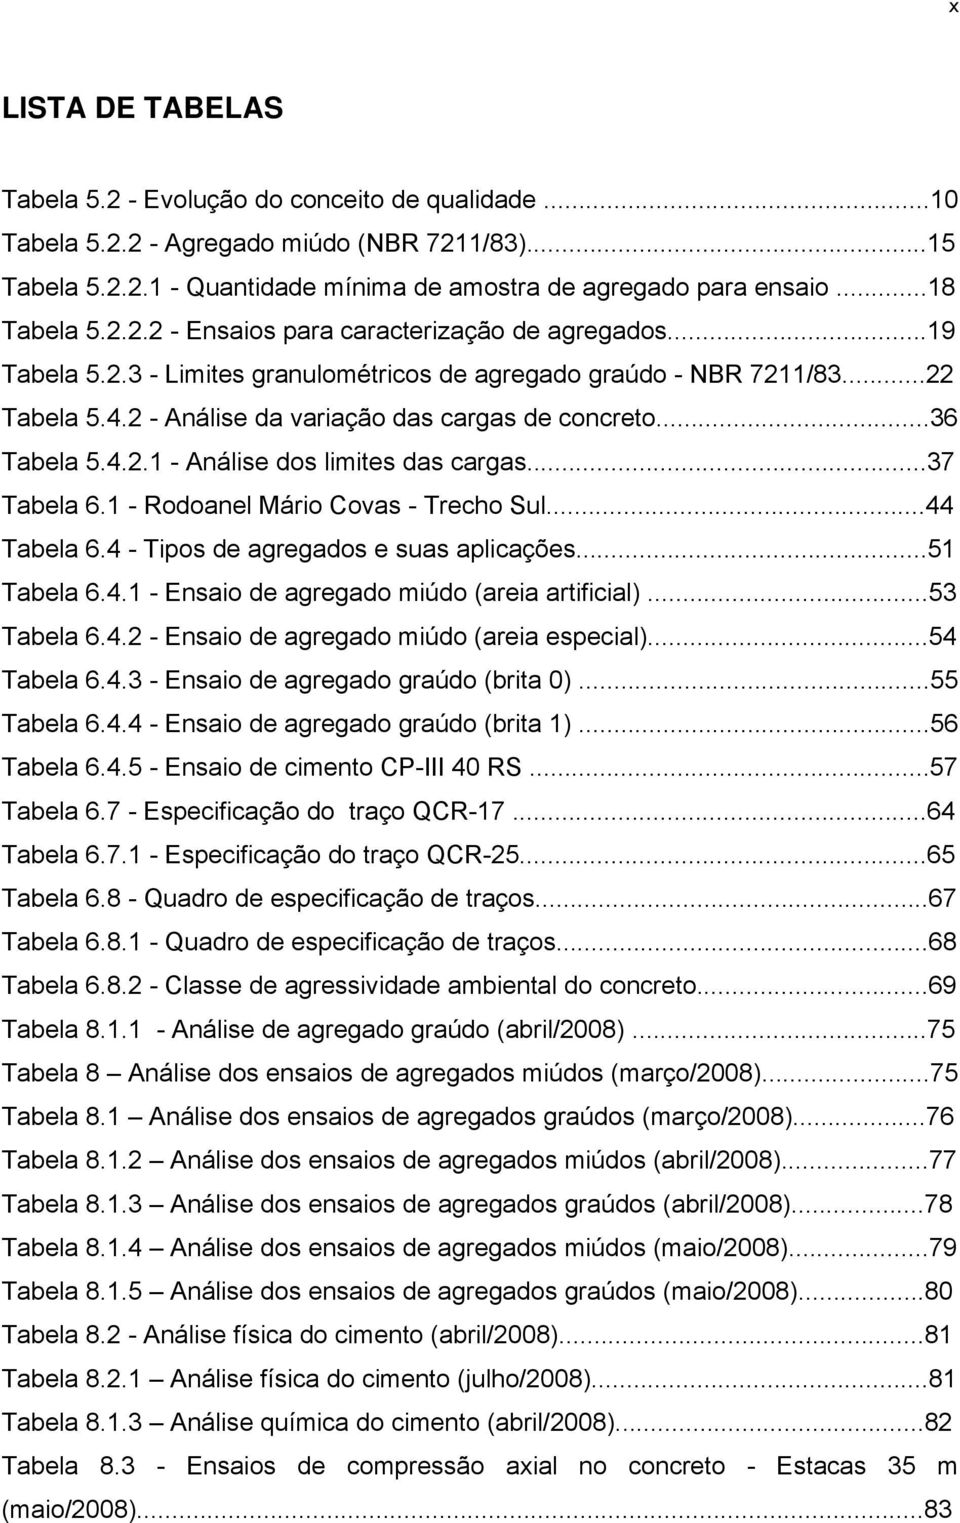 2 - Análise da variação das cargas de concreto...36 Tabela 5.4.2.1 - Análise dos limites das cargas...37 Tabela 6.1 - Rodoanel Mário Covas - Trecho Sul...44 Tabela 6.